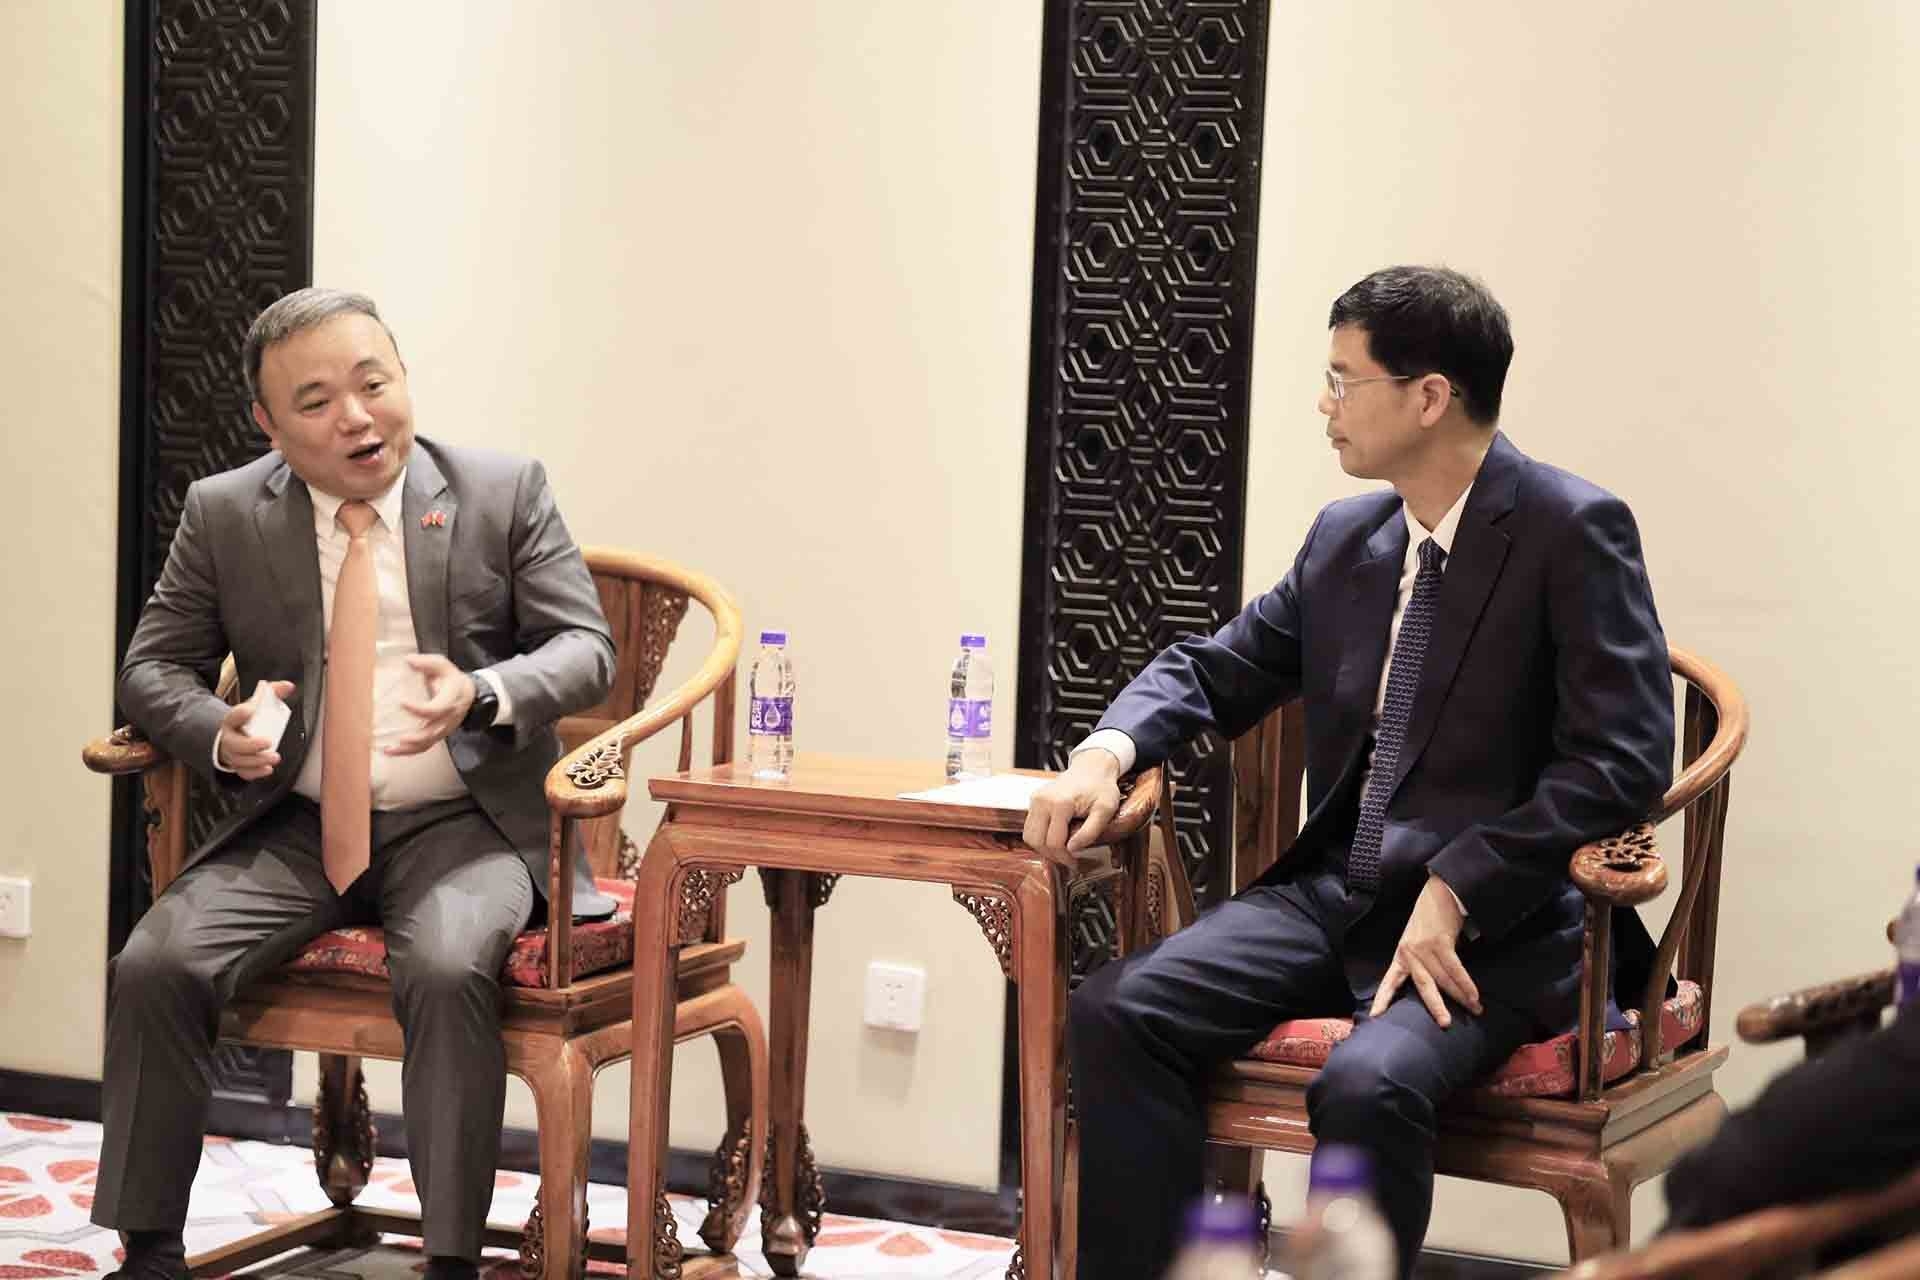 阮世松总领事与国国际贸易促进委员会浙江省委员会会长陈建忠进行了交谈。